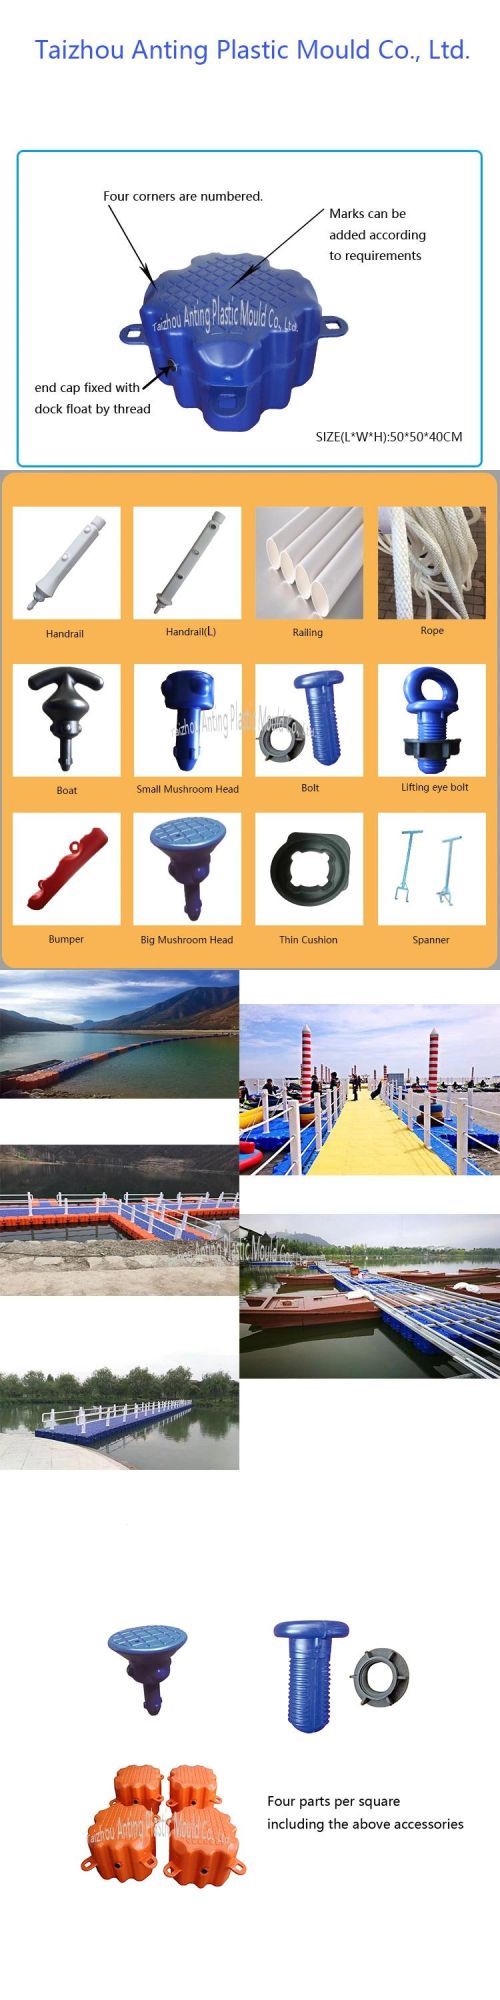 Accessories for New Floating Pontoon Boat Jet Ski Platform